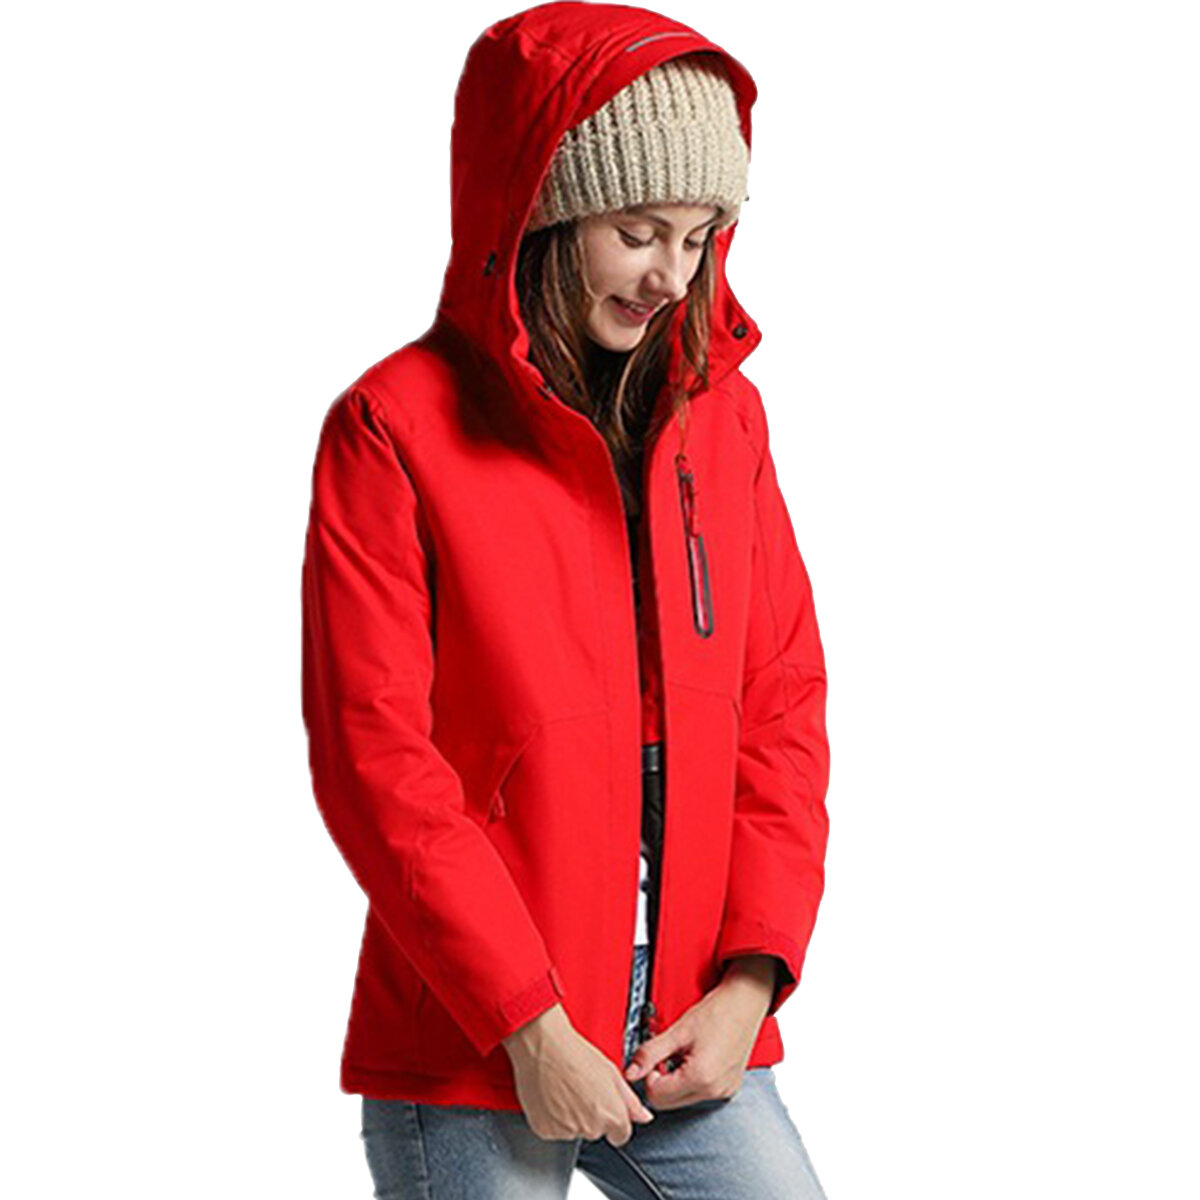 Женщины зима Водонепроницаемы USB инфракрасный обогрев с капюшоном пуховик электрический термобелье пальто для спорта альпинизм туризм